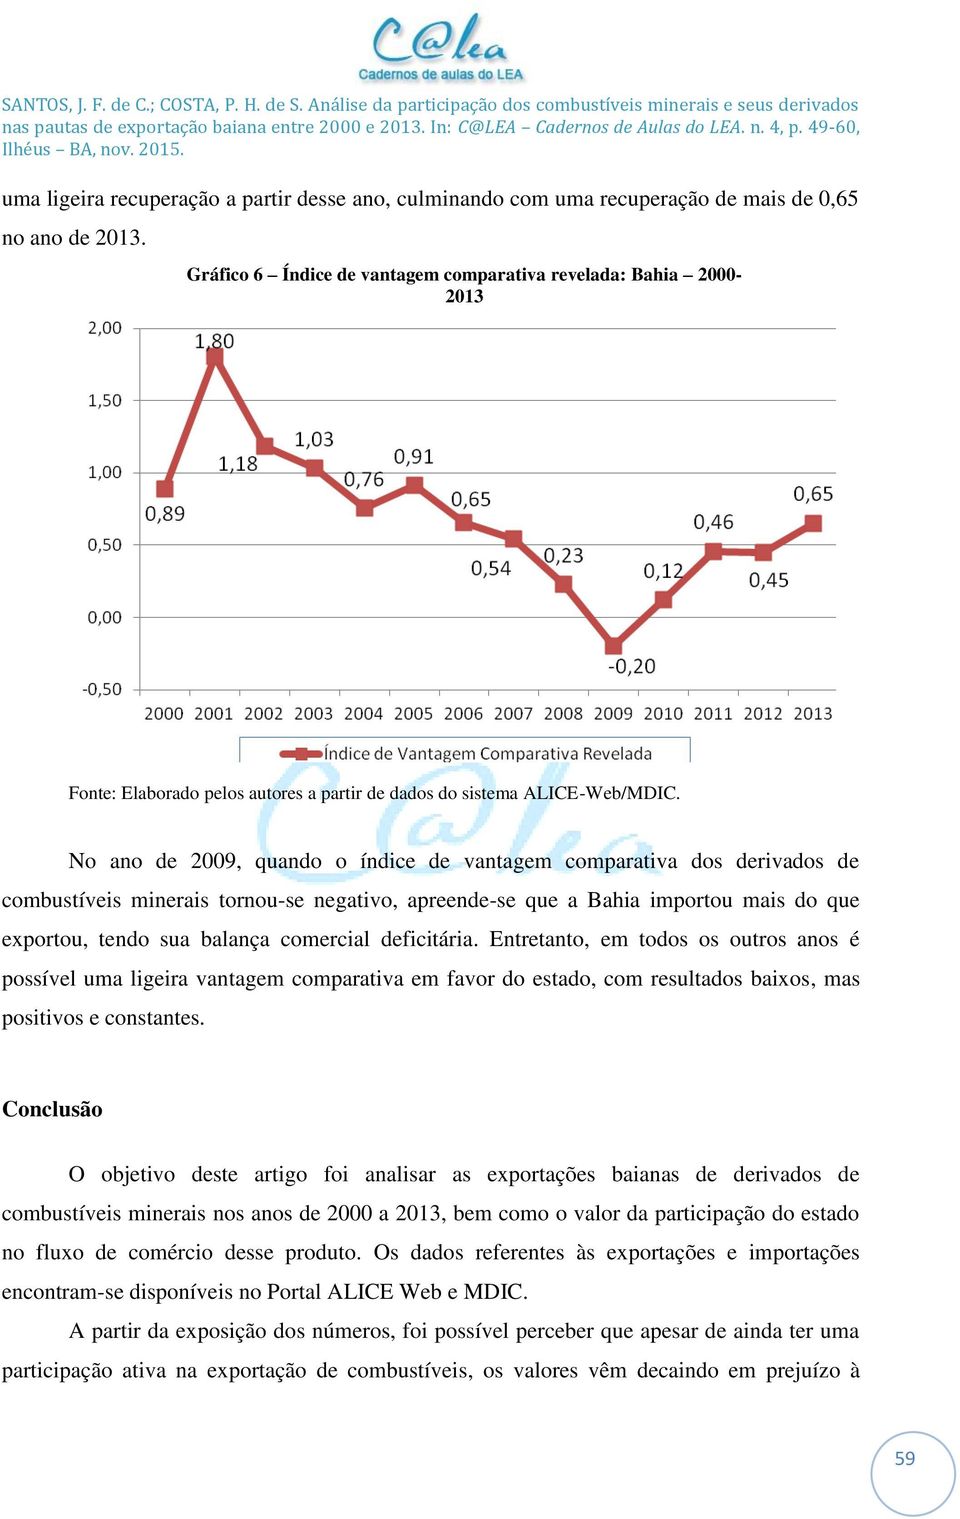 No ano de 2009, quando o índice de vantagem comparativa dos derivados de combustíveis minerais tornou-se negativo, apreende-se que a Bahia importou mais do que exportou, tendo sua balança comercial